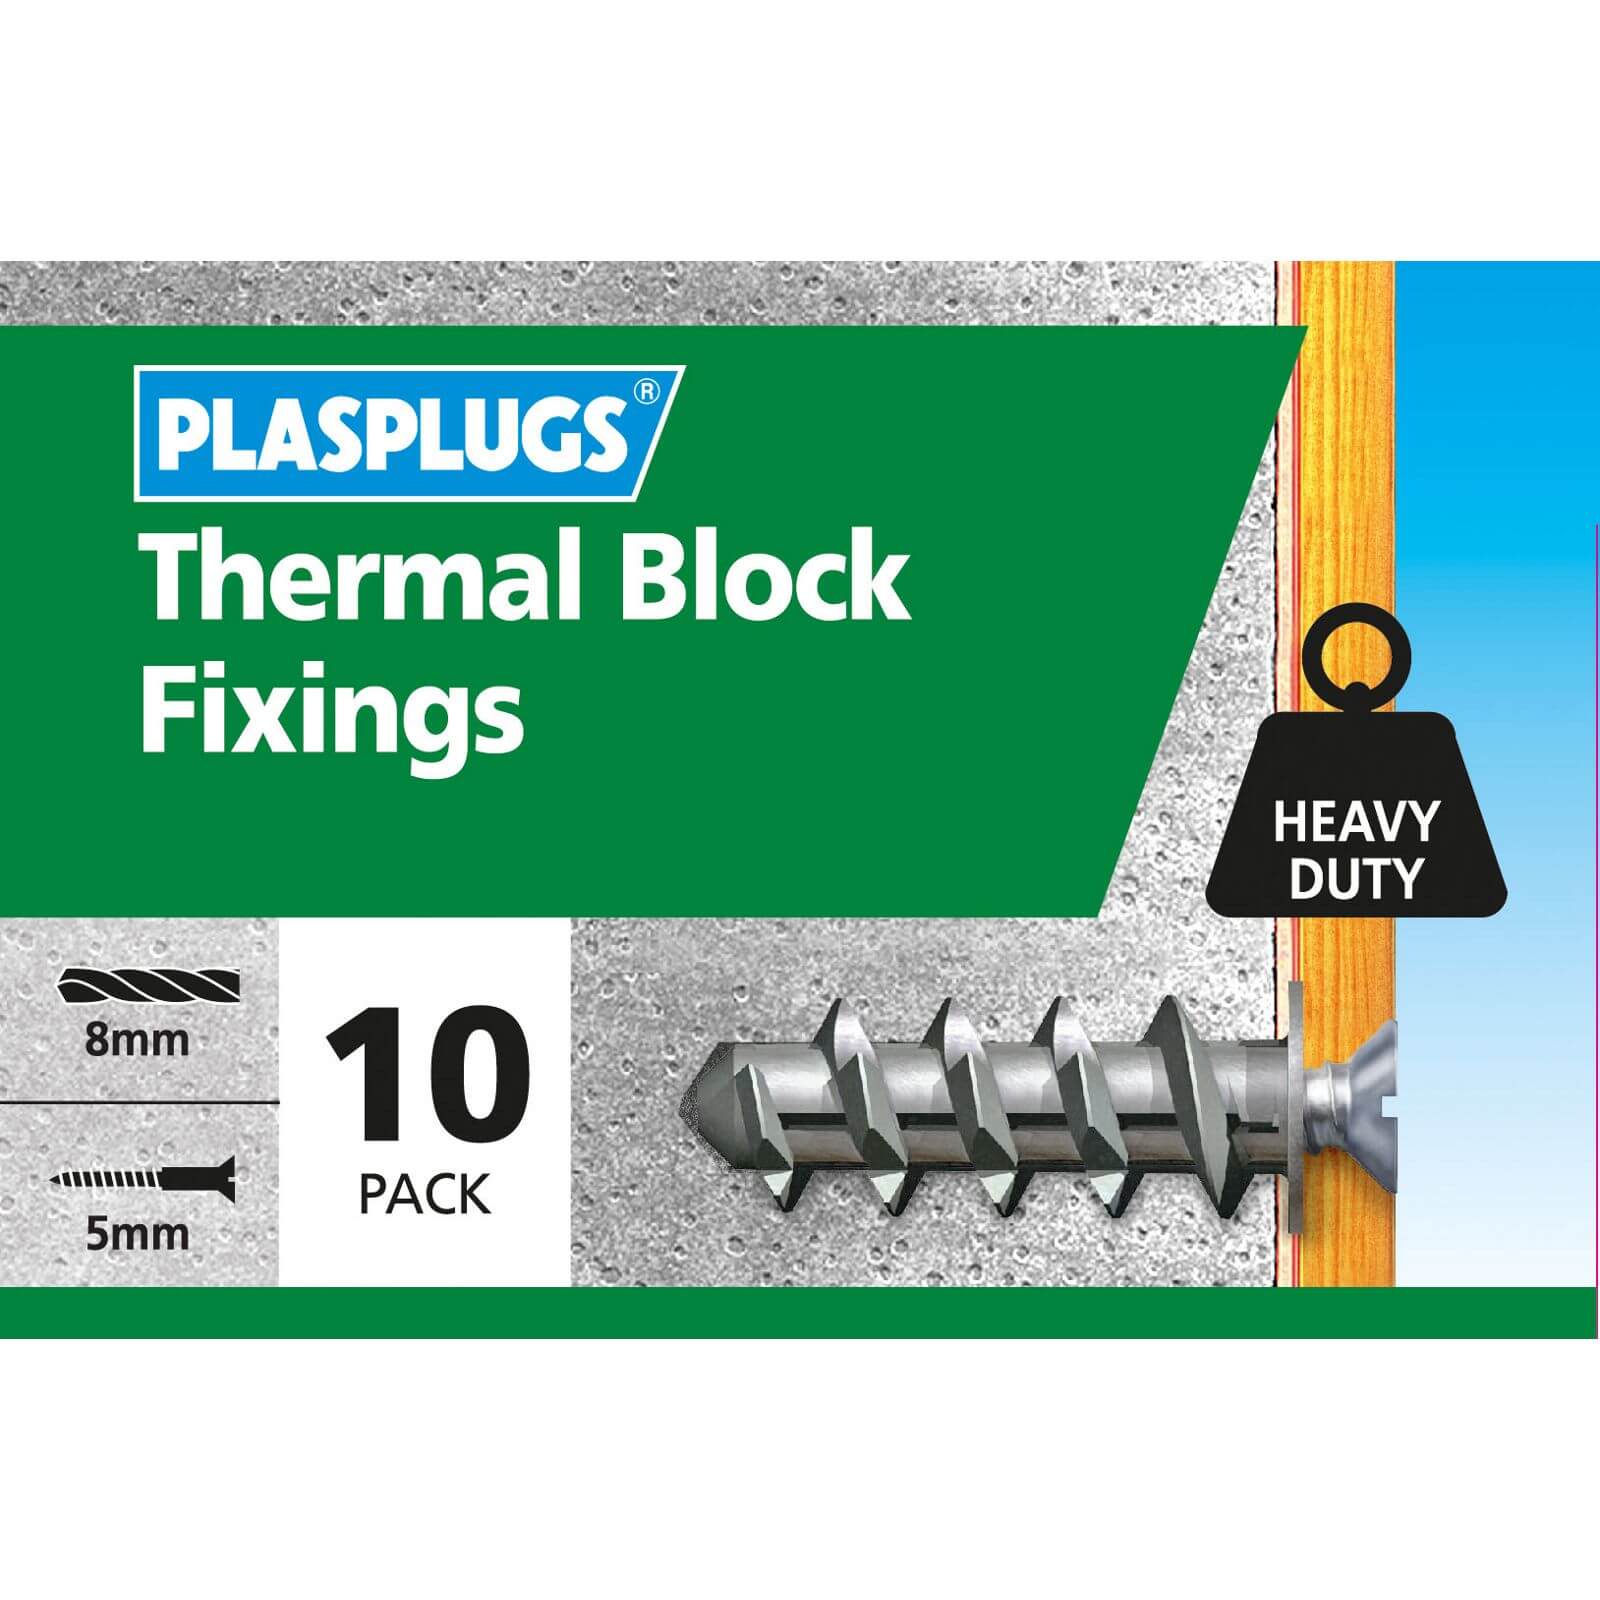 Plasplugs Thermal Block Fixings